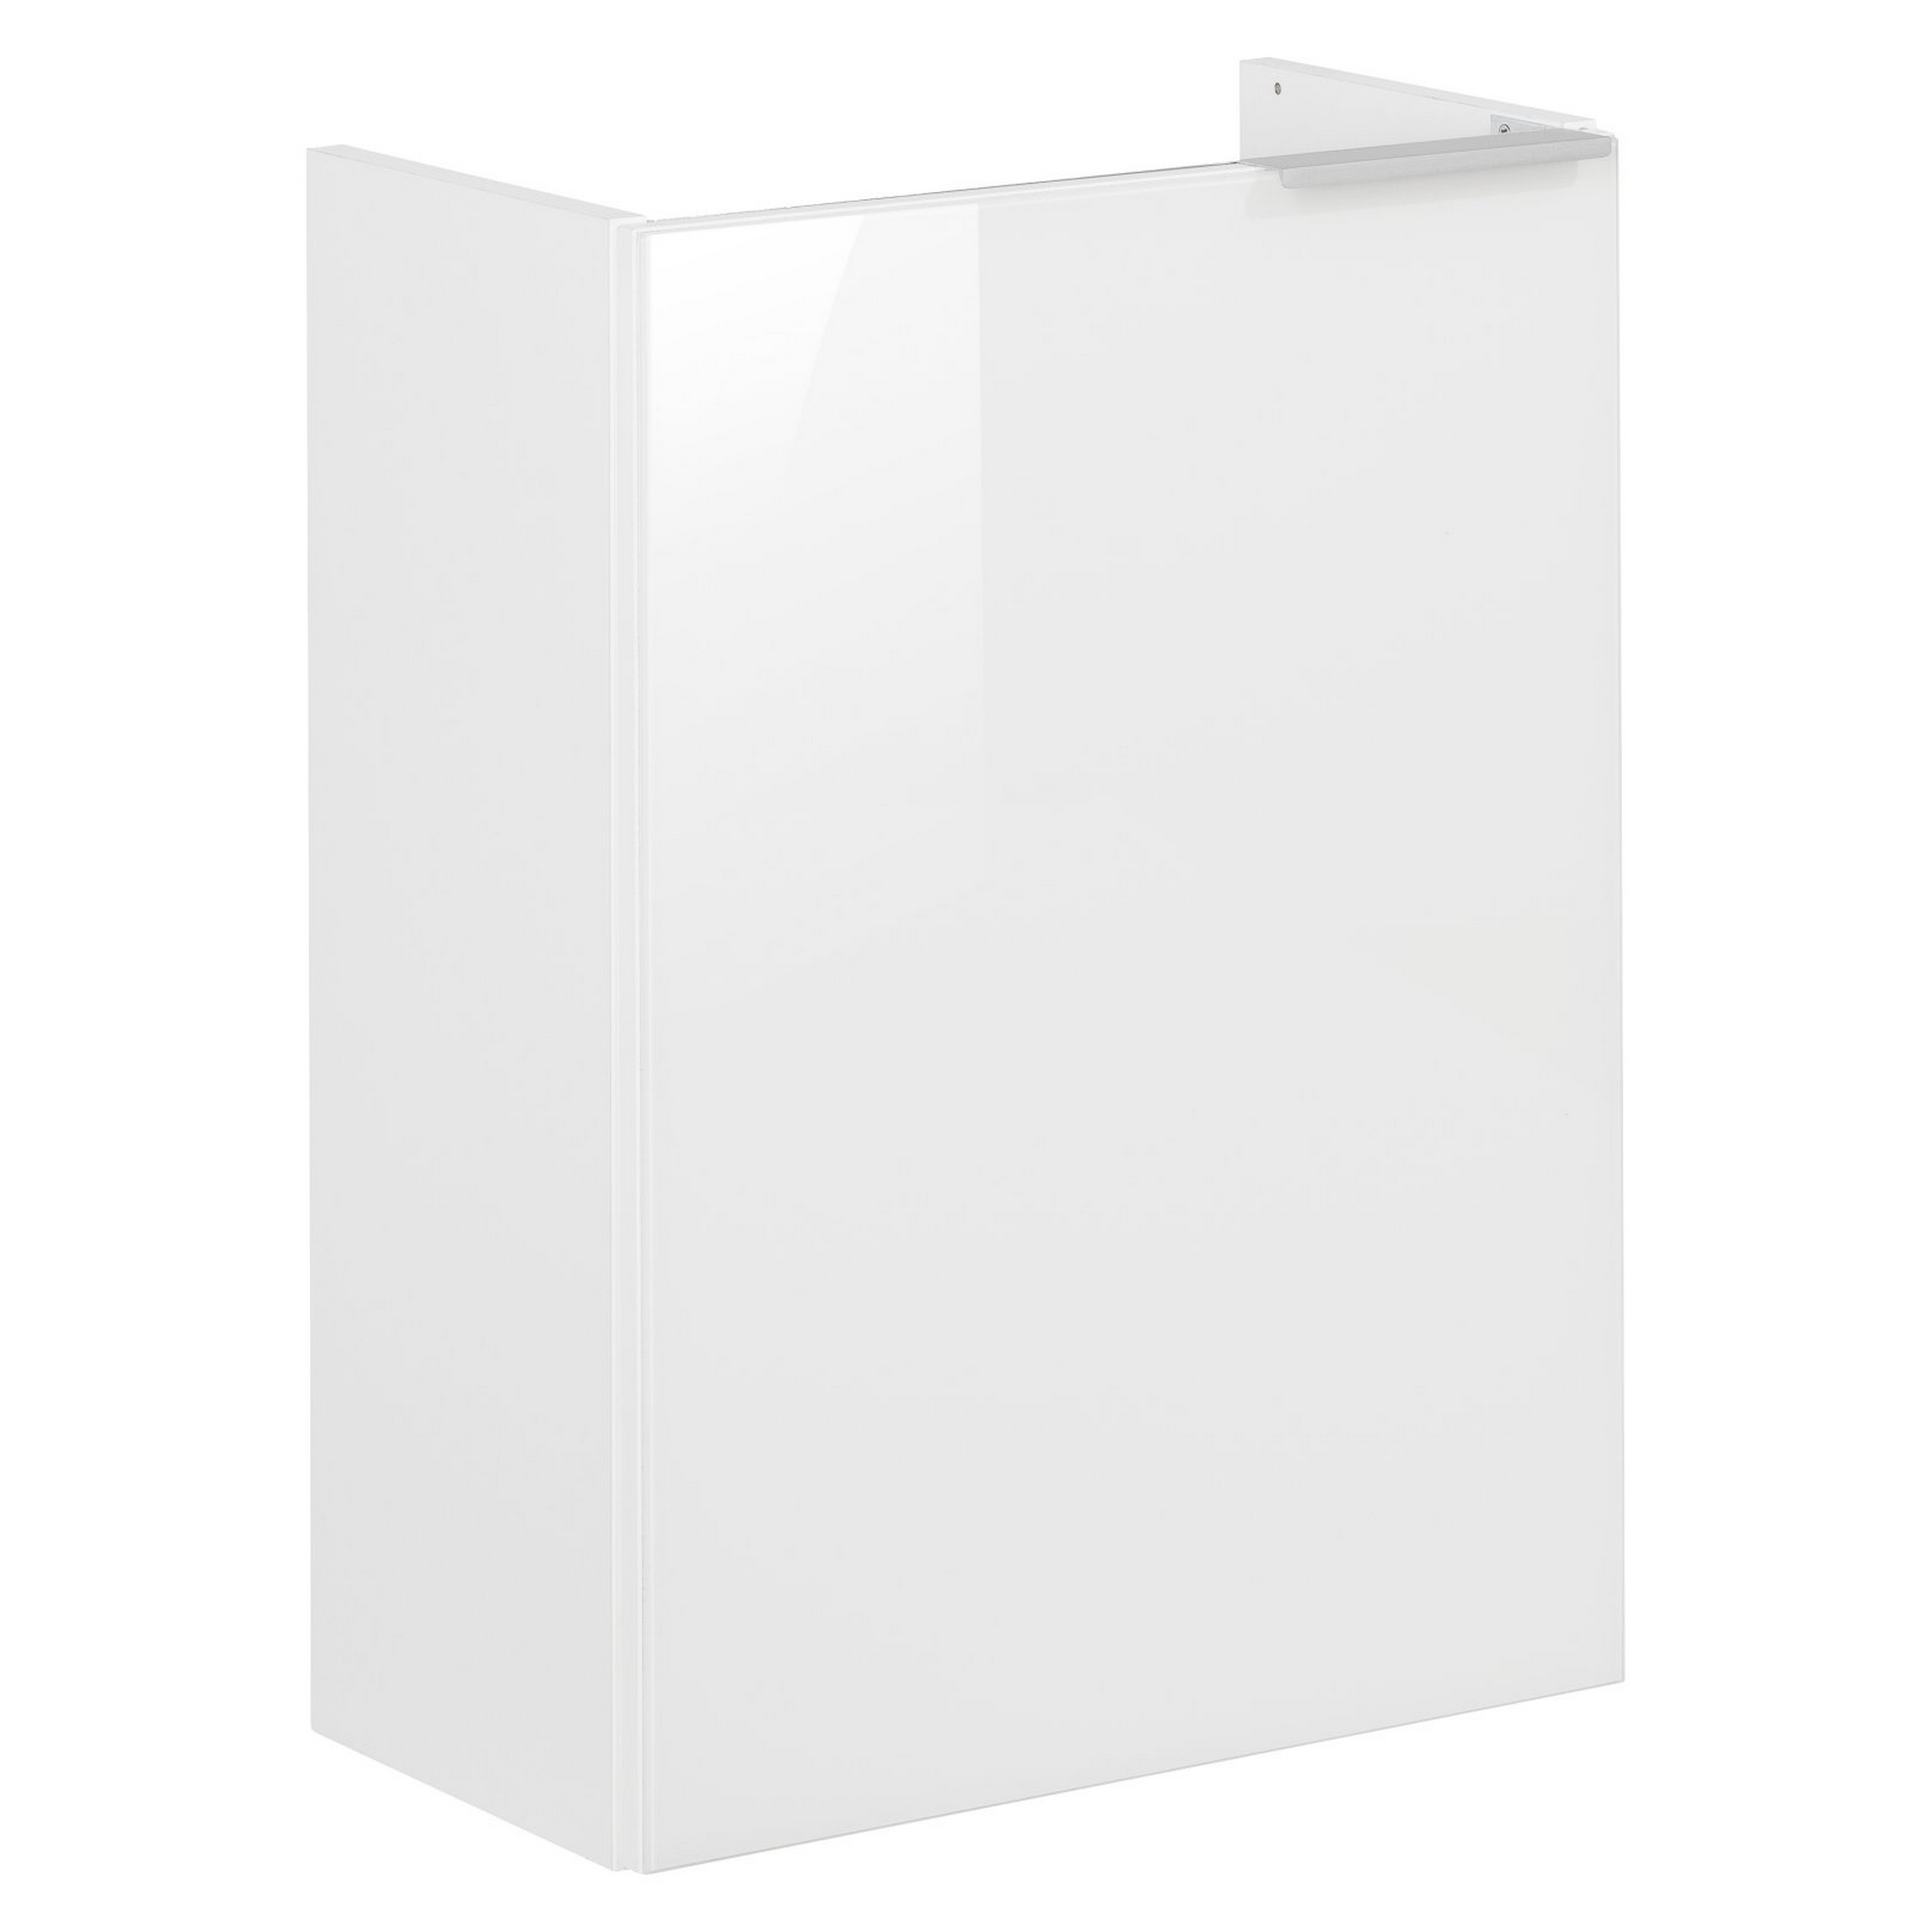 Waschtischunterschrank 'Kara' weiß 44 x 60 x 24,5 cm links + product picture